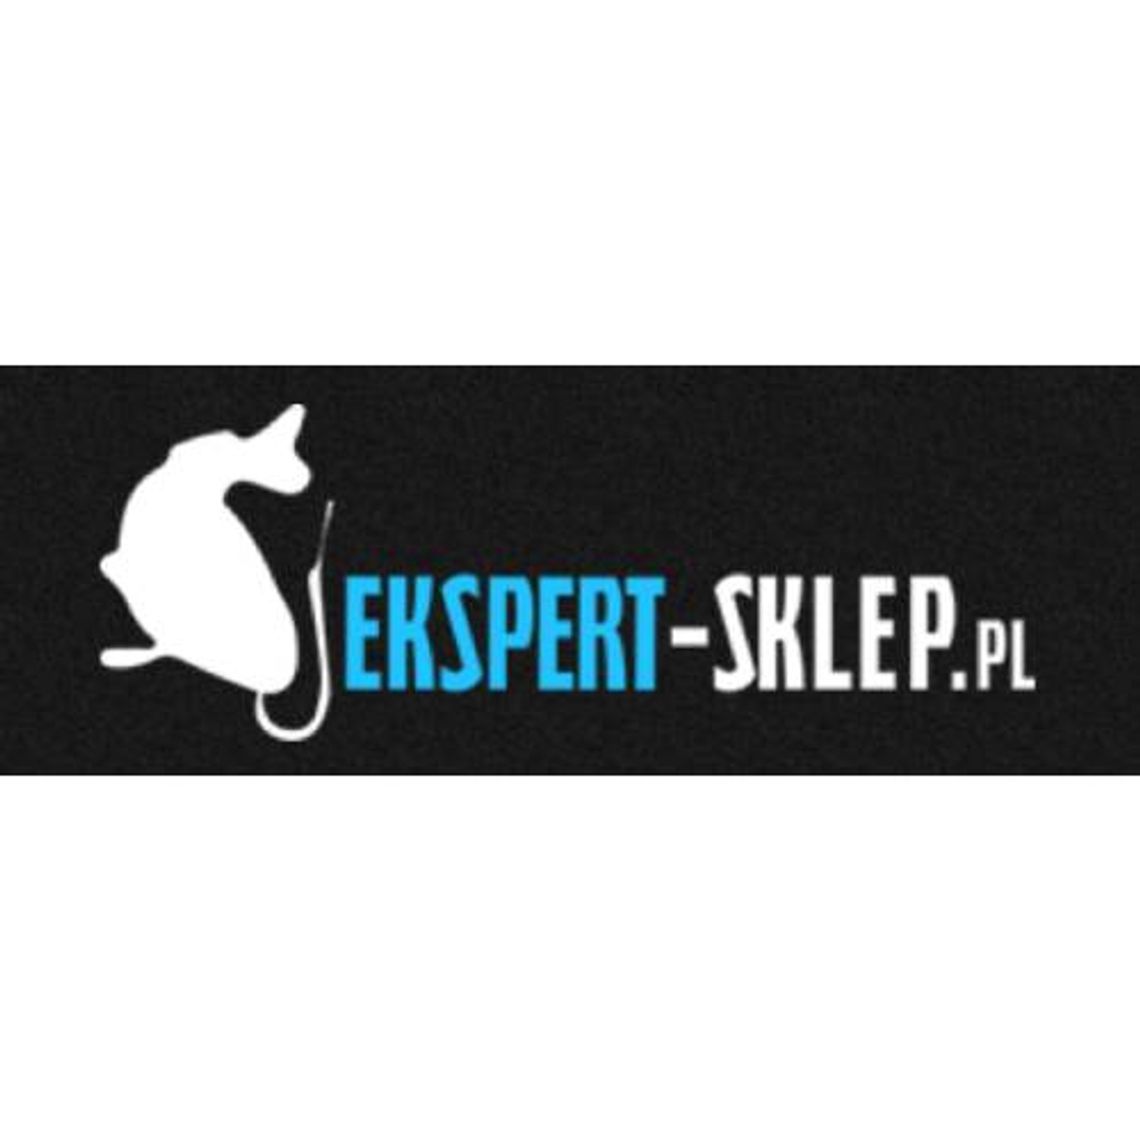 Ekspert-sklep.pl - sklep z wyposażeniem dla wędkarzy